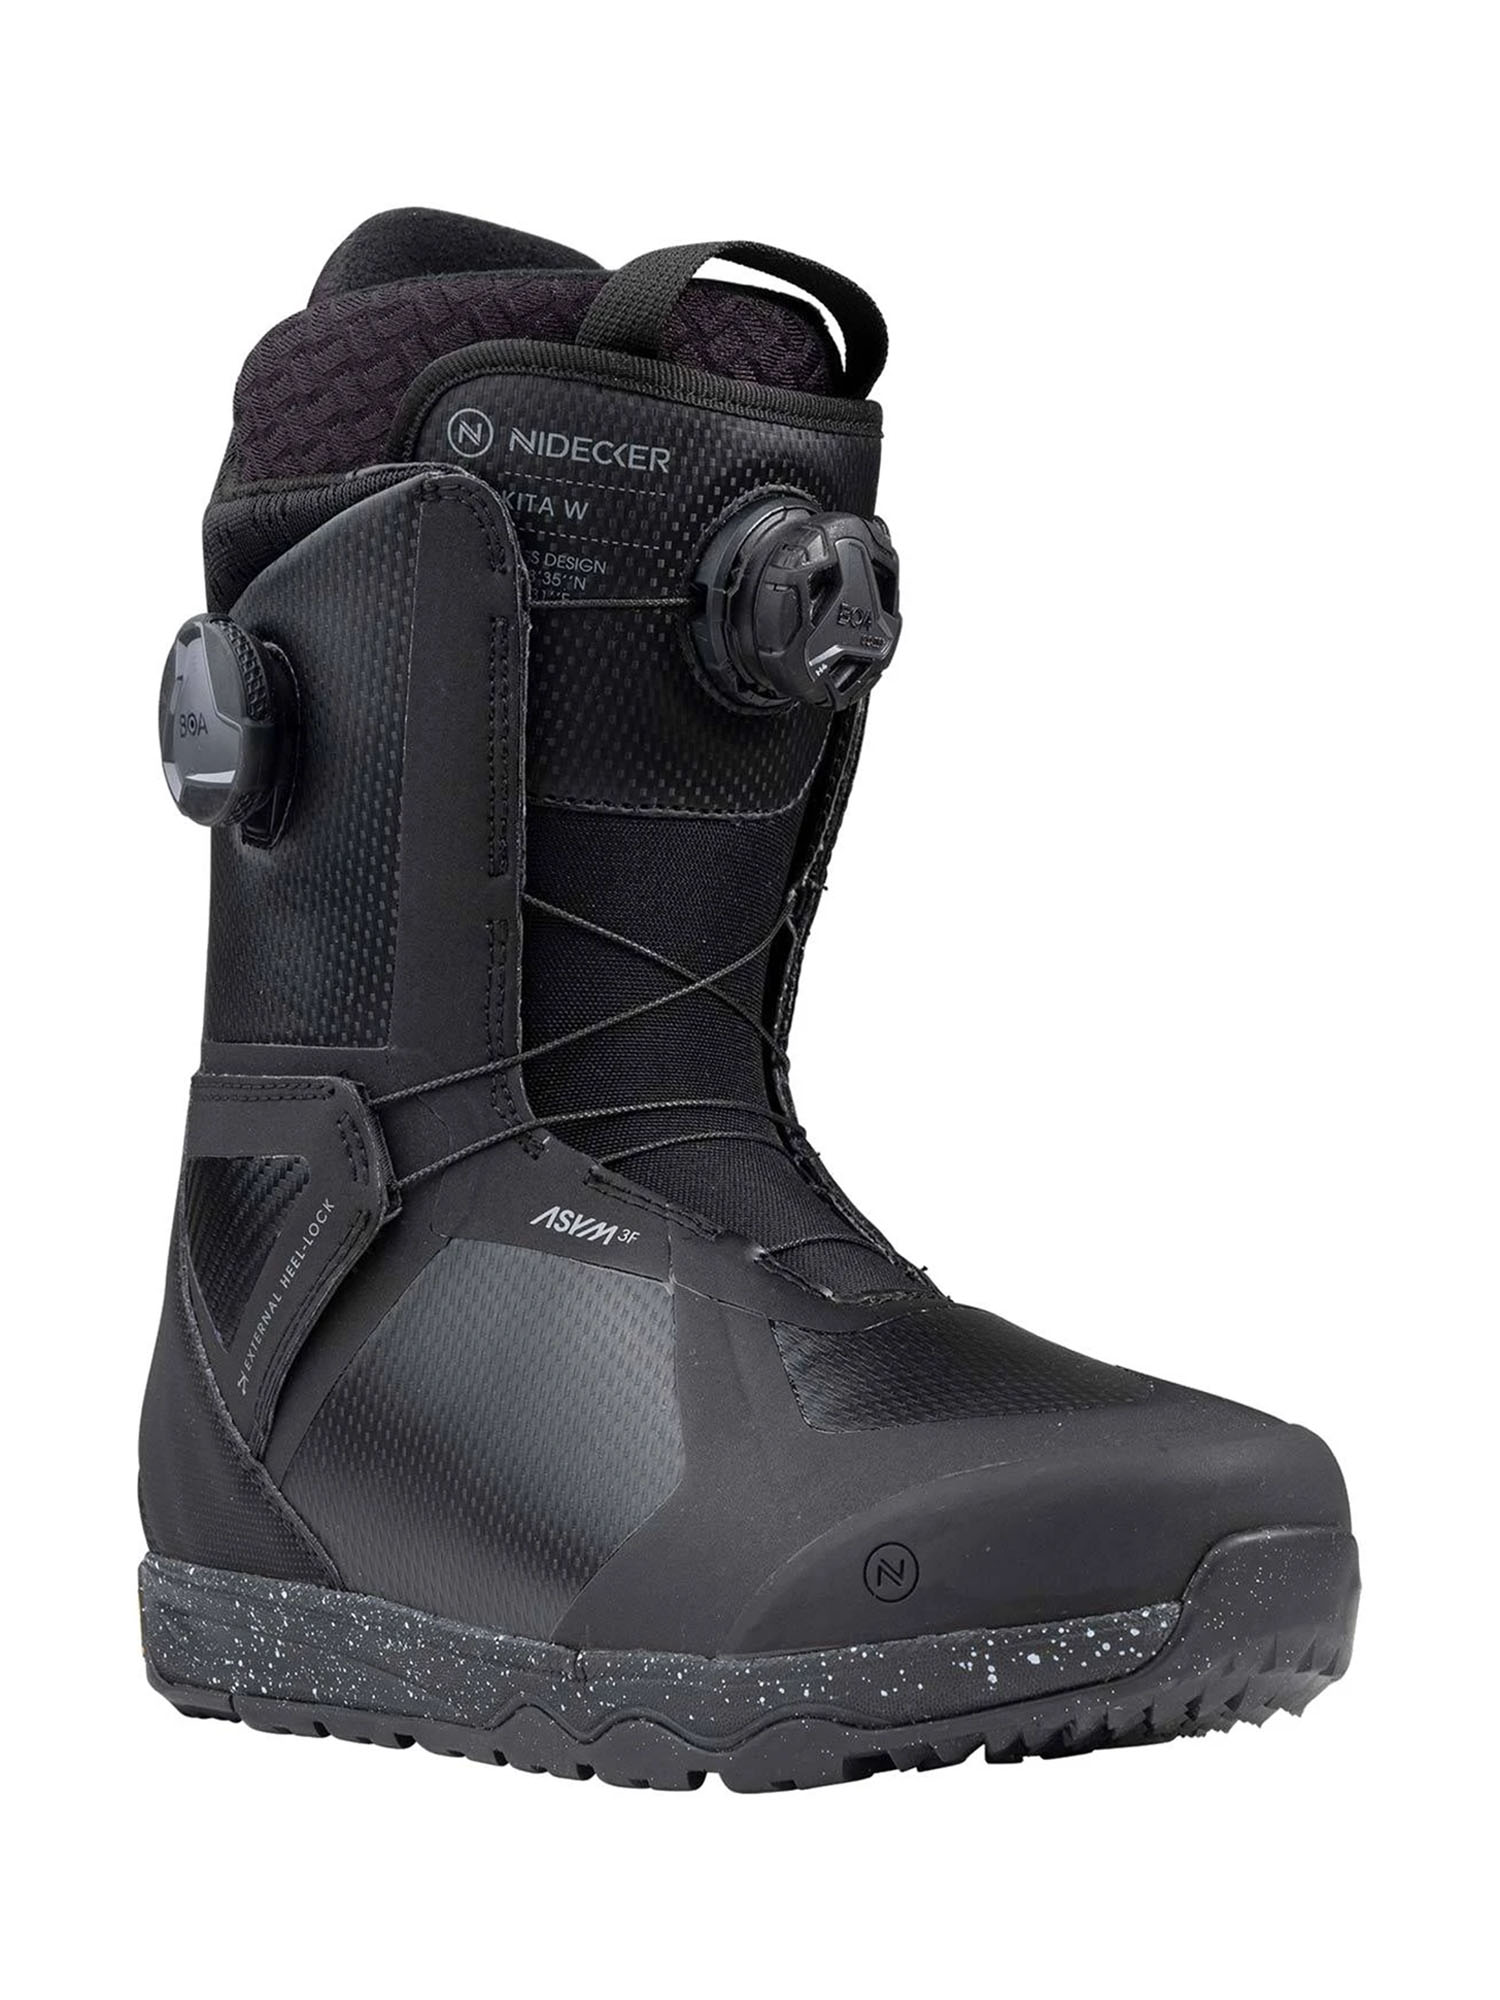 Ботинки для сноуборда Nidecker Kita W 2023-2024 black 22 см